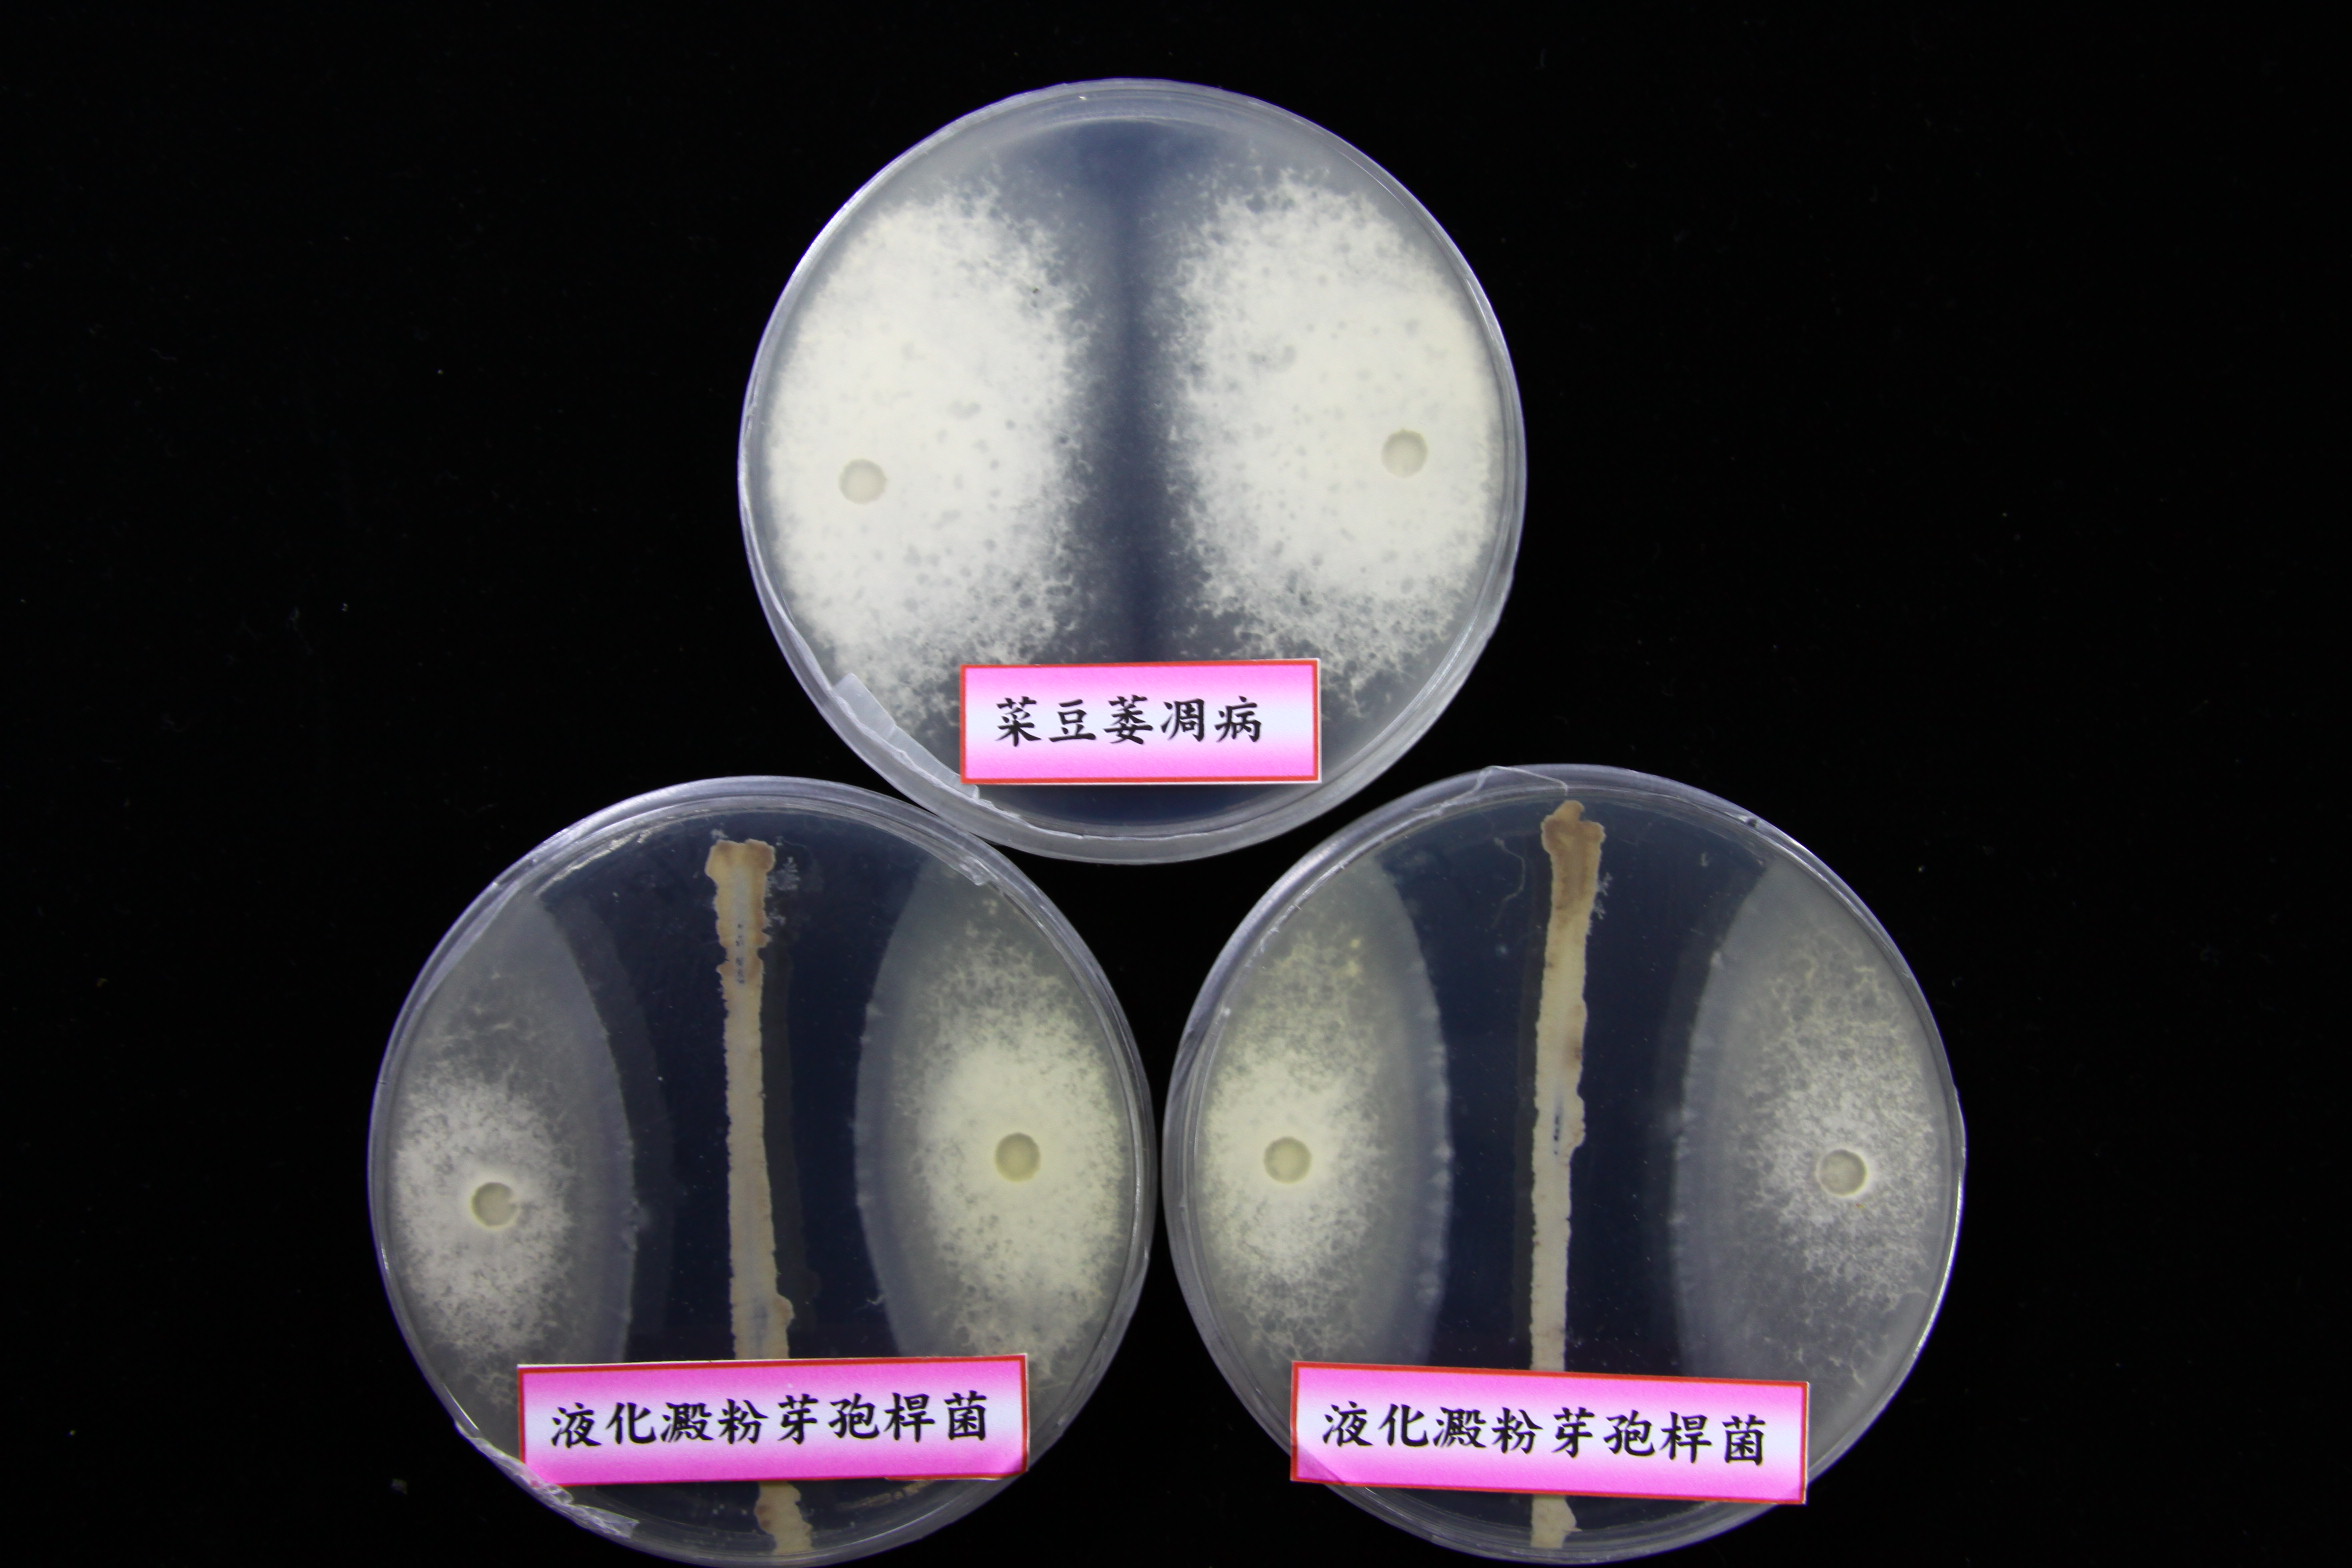 液化澱粉芽孢桿菌 Tcba05 可抑制菜豆萎凋病菌之生長